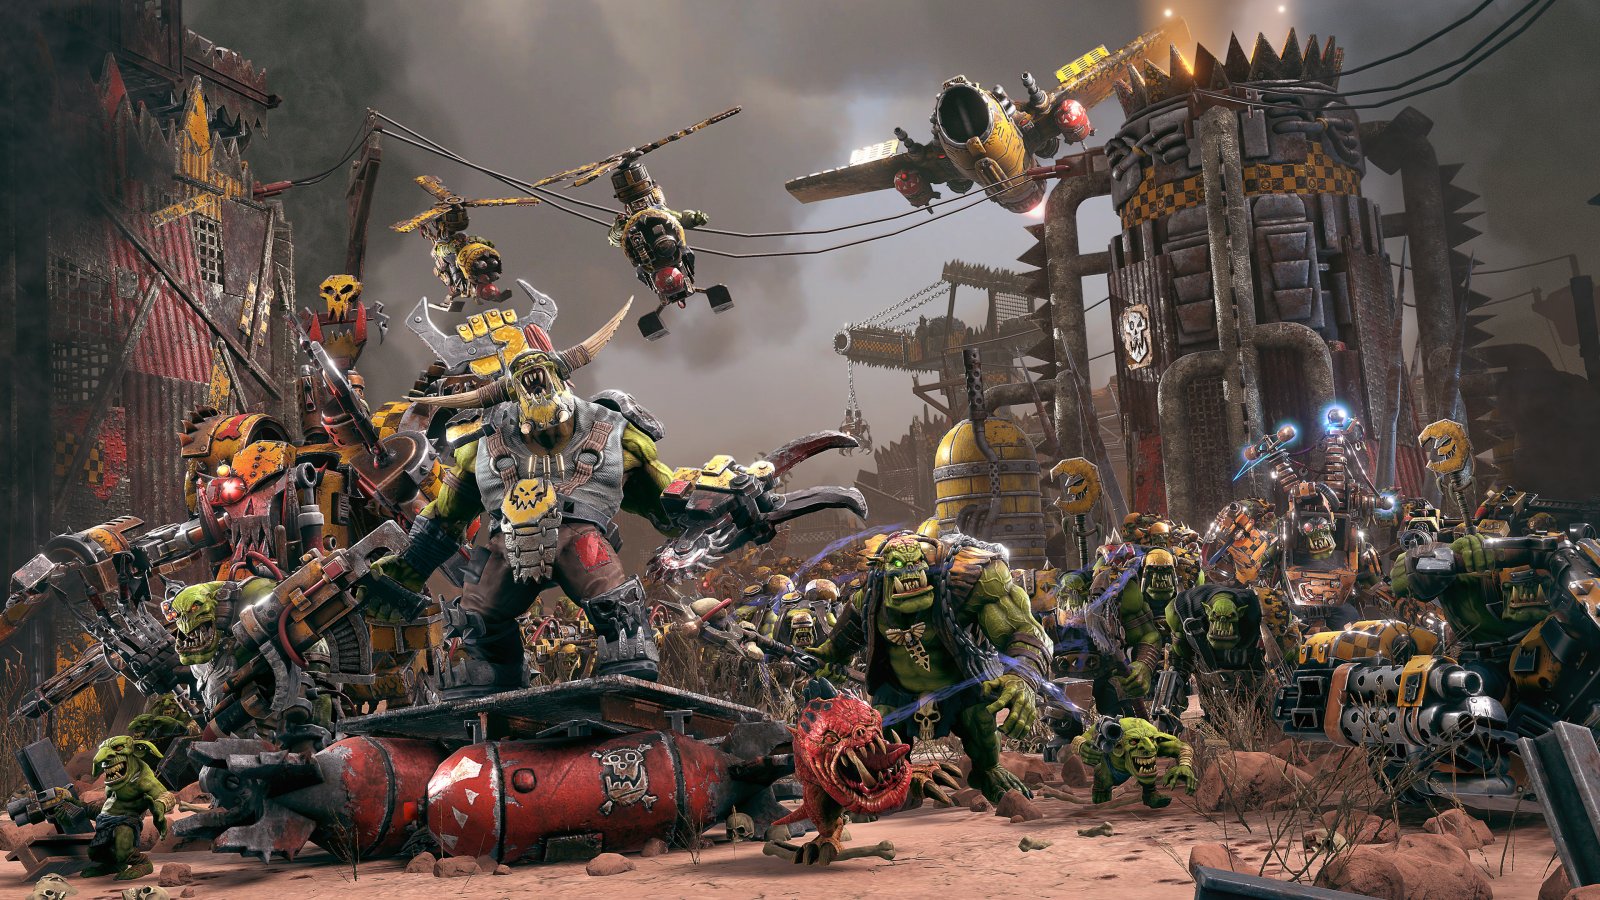 Warhammer Skulls Showcase: tutti gli annunci a tema videoludico, tra nuovi giochi e contenuti